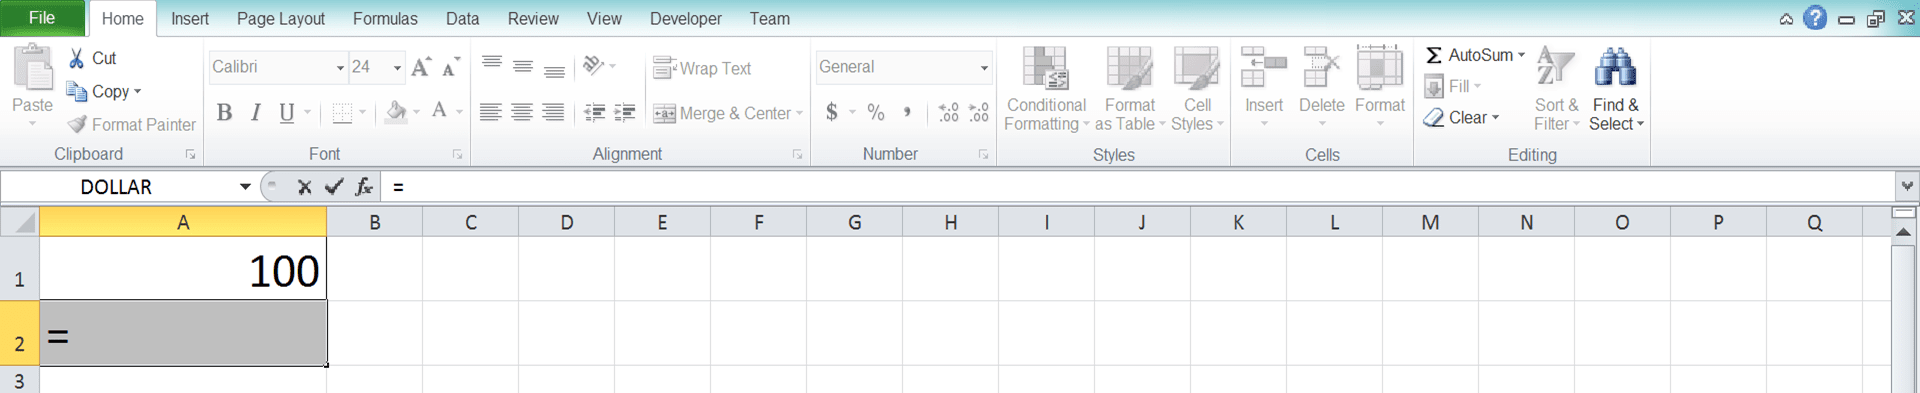 Cara Menghitung Akar di Excel Beserta Berbagai Rumus dan Fungsinya - Screenshot Langkah 3-1